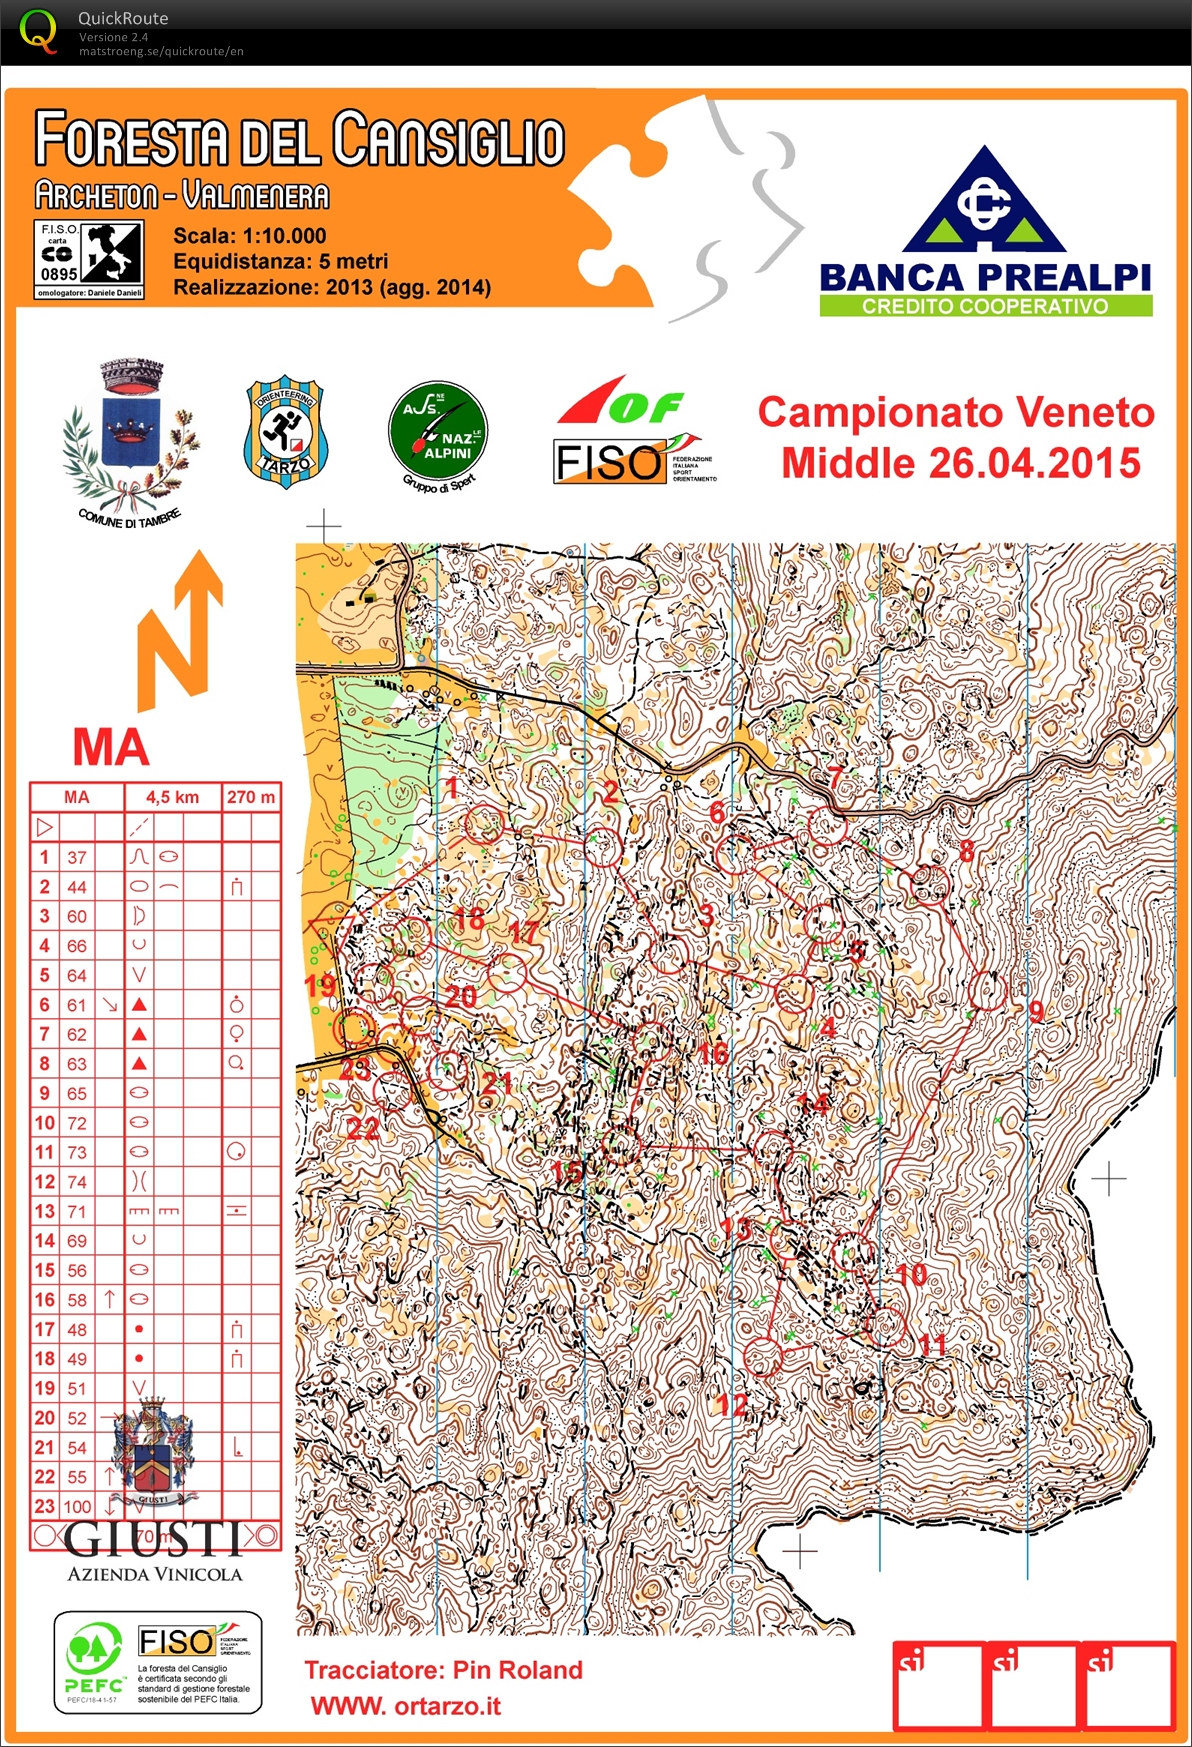 Campionato Veneto Middle 2015 (2015-04-26)